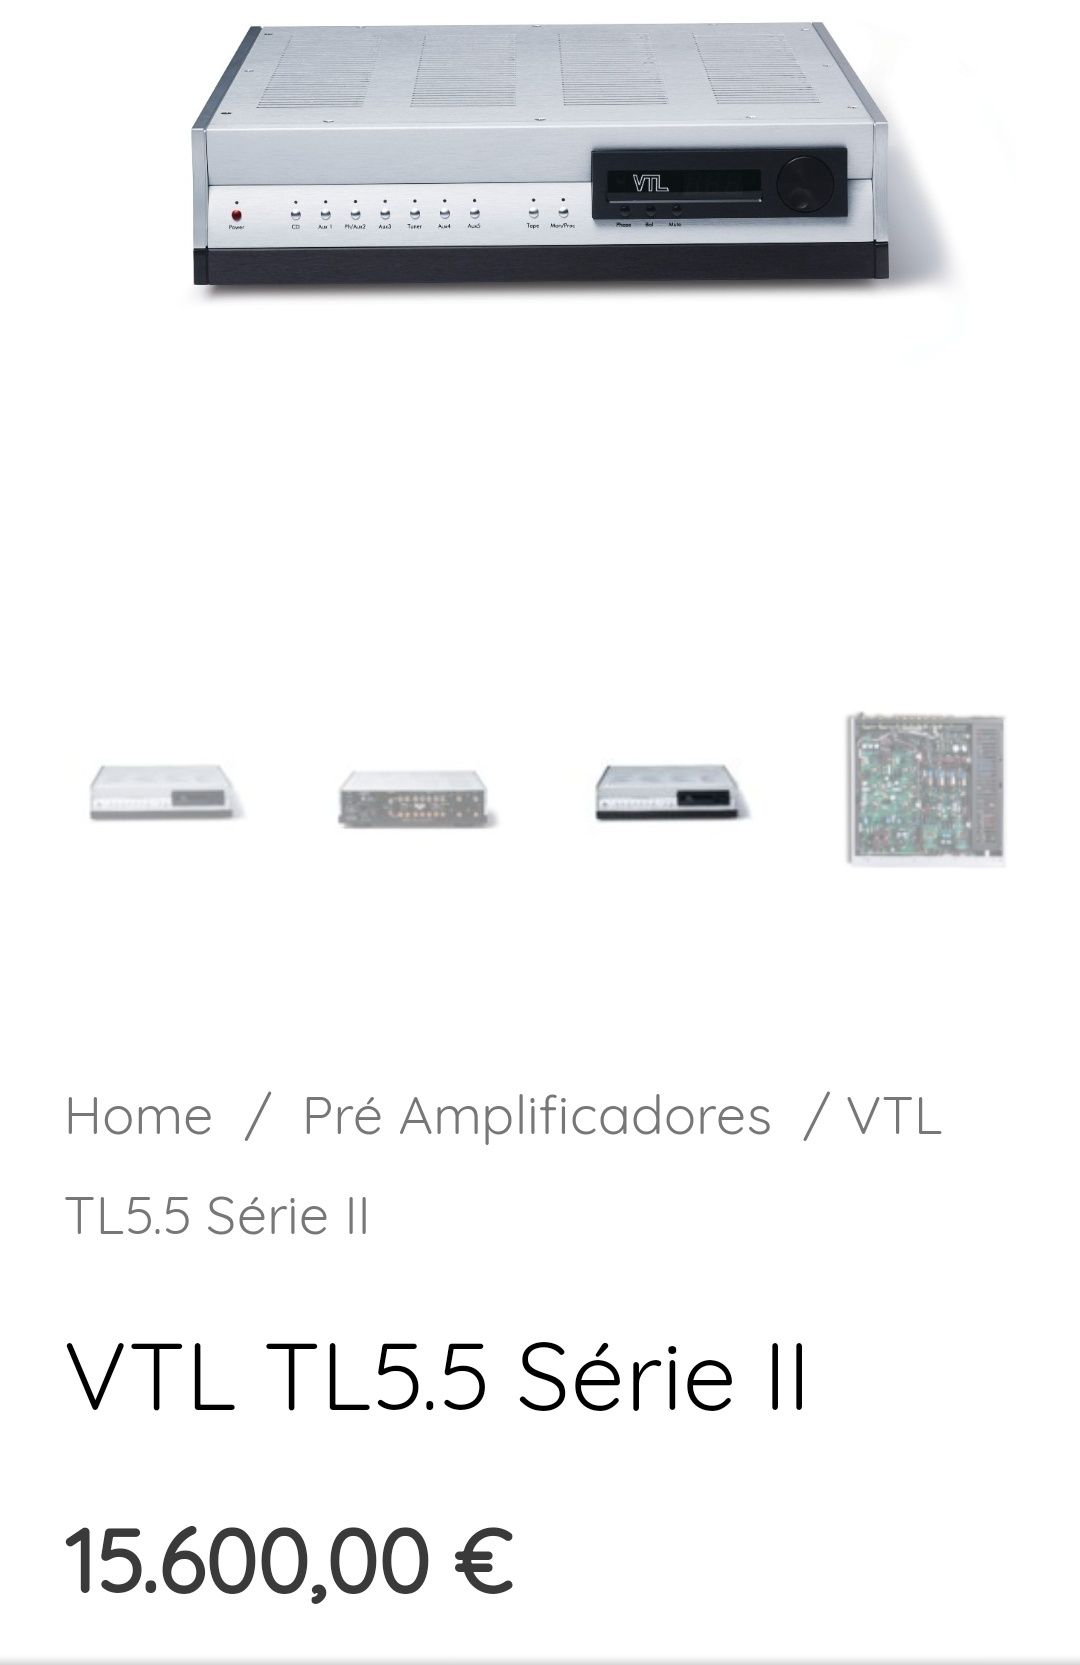 VTL 5.5 II signature pré-amplificador